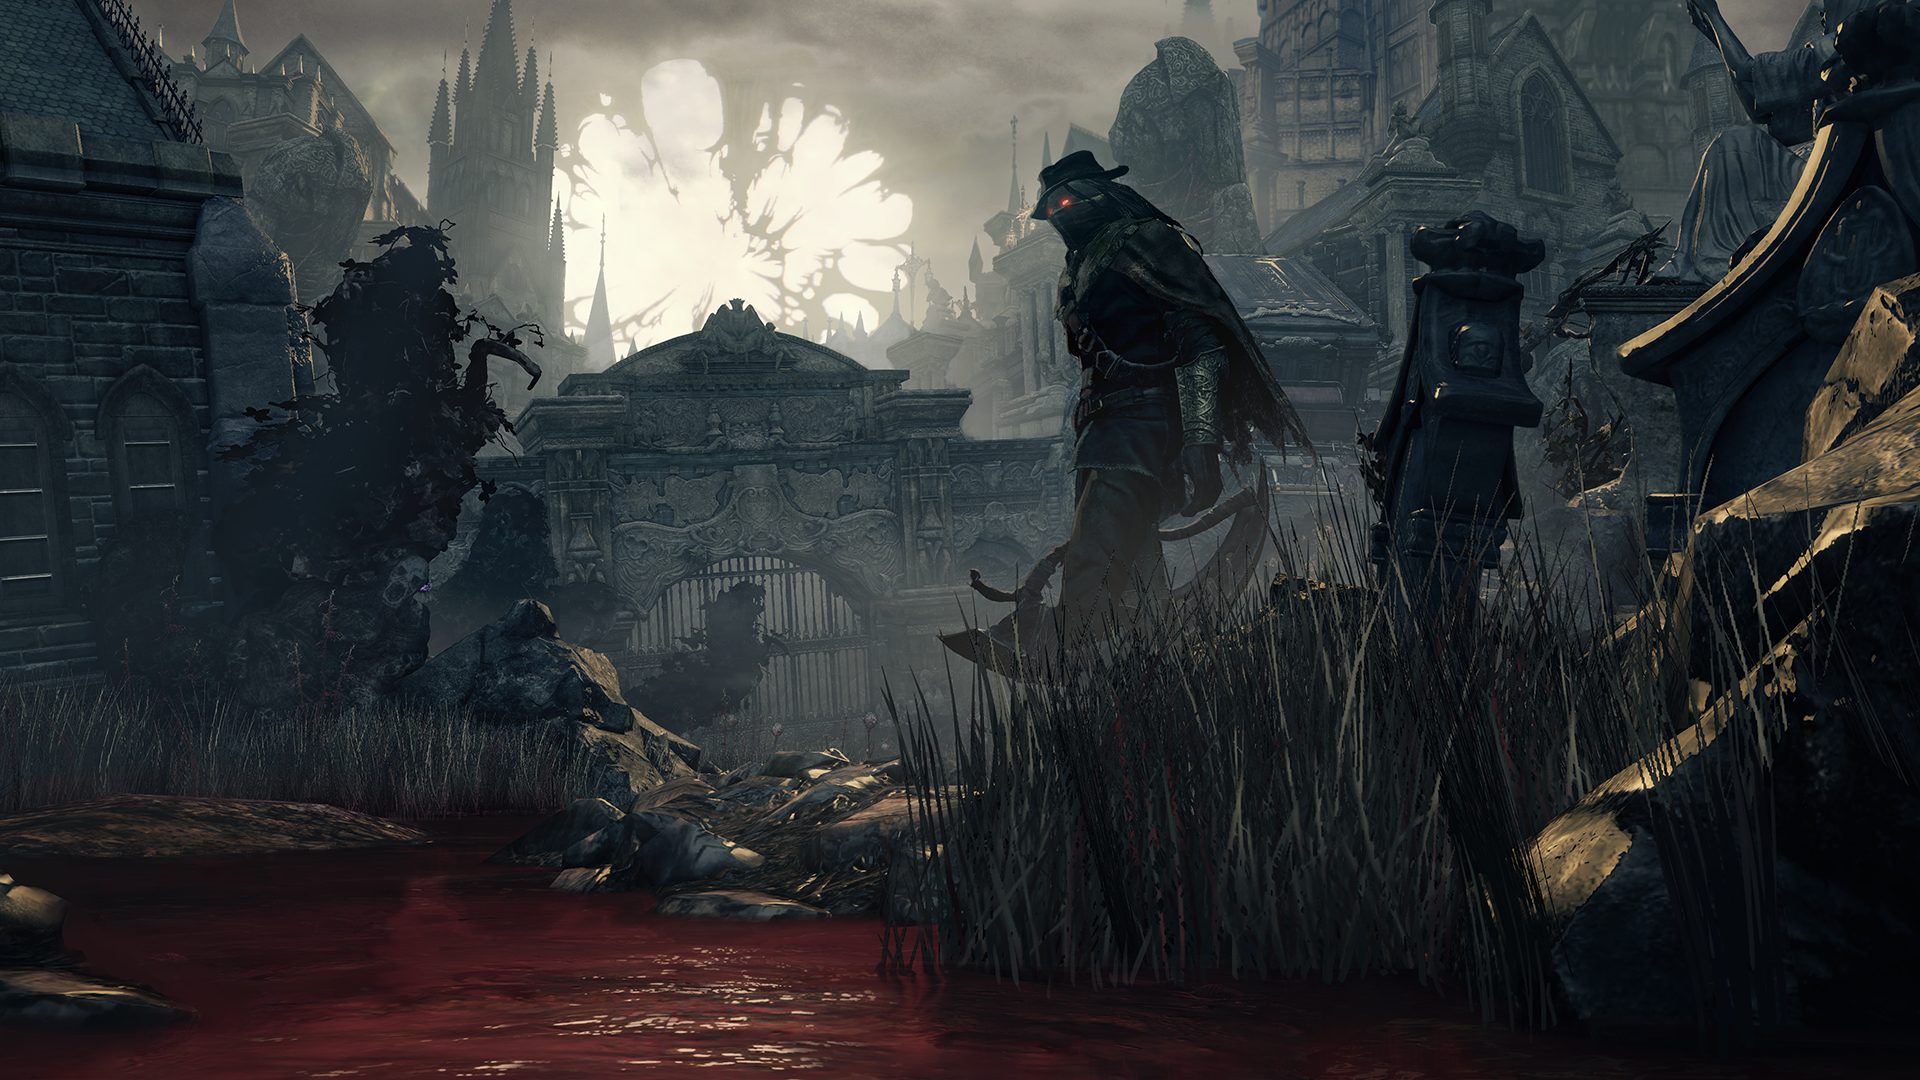 #video Games, #bloodborne, Wallpaper - Dark Souls Unseen Lands , HD Wallpaper & Backgrounds